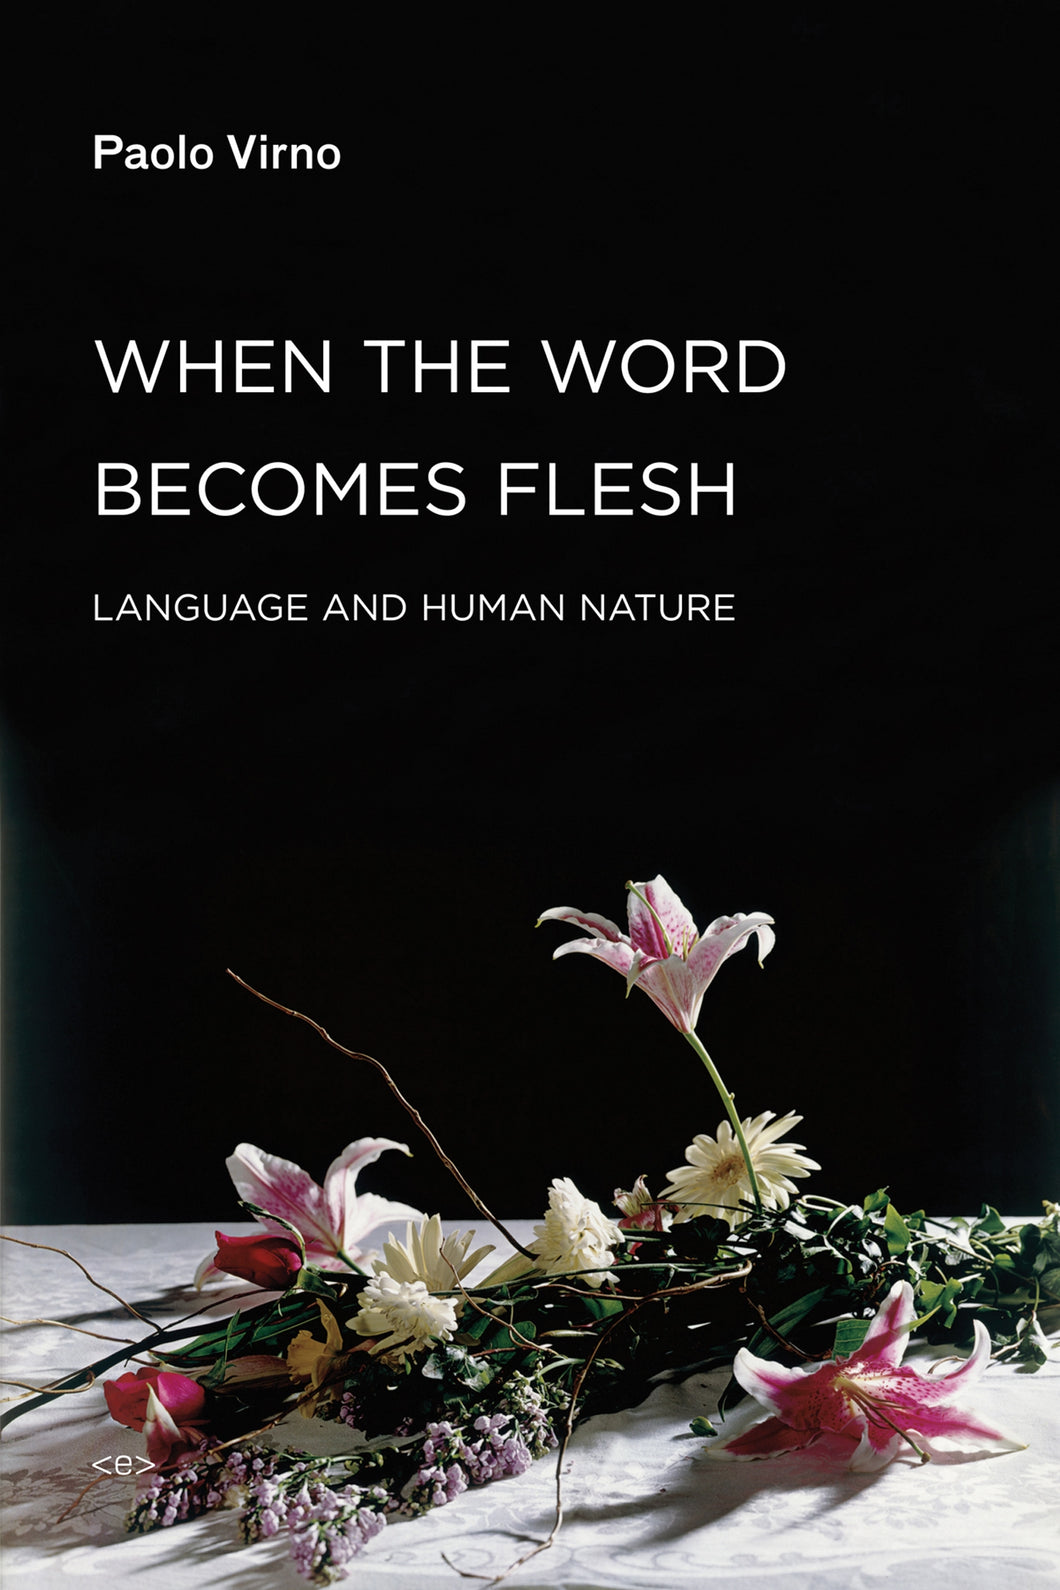 When the Word Becomes Flesh : Language and Human Nature ร้านหนังสือและสิ่งของ เป็นร้านหนังสือภาษาอังกฤษหายาก และร้านกาแฟ หรือ บุ๊คคาเฟ่ ตั้งอยู่สุขุมวิท กรุงเทพ